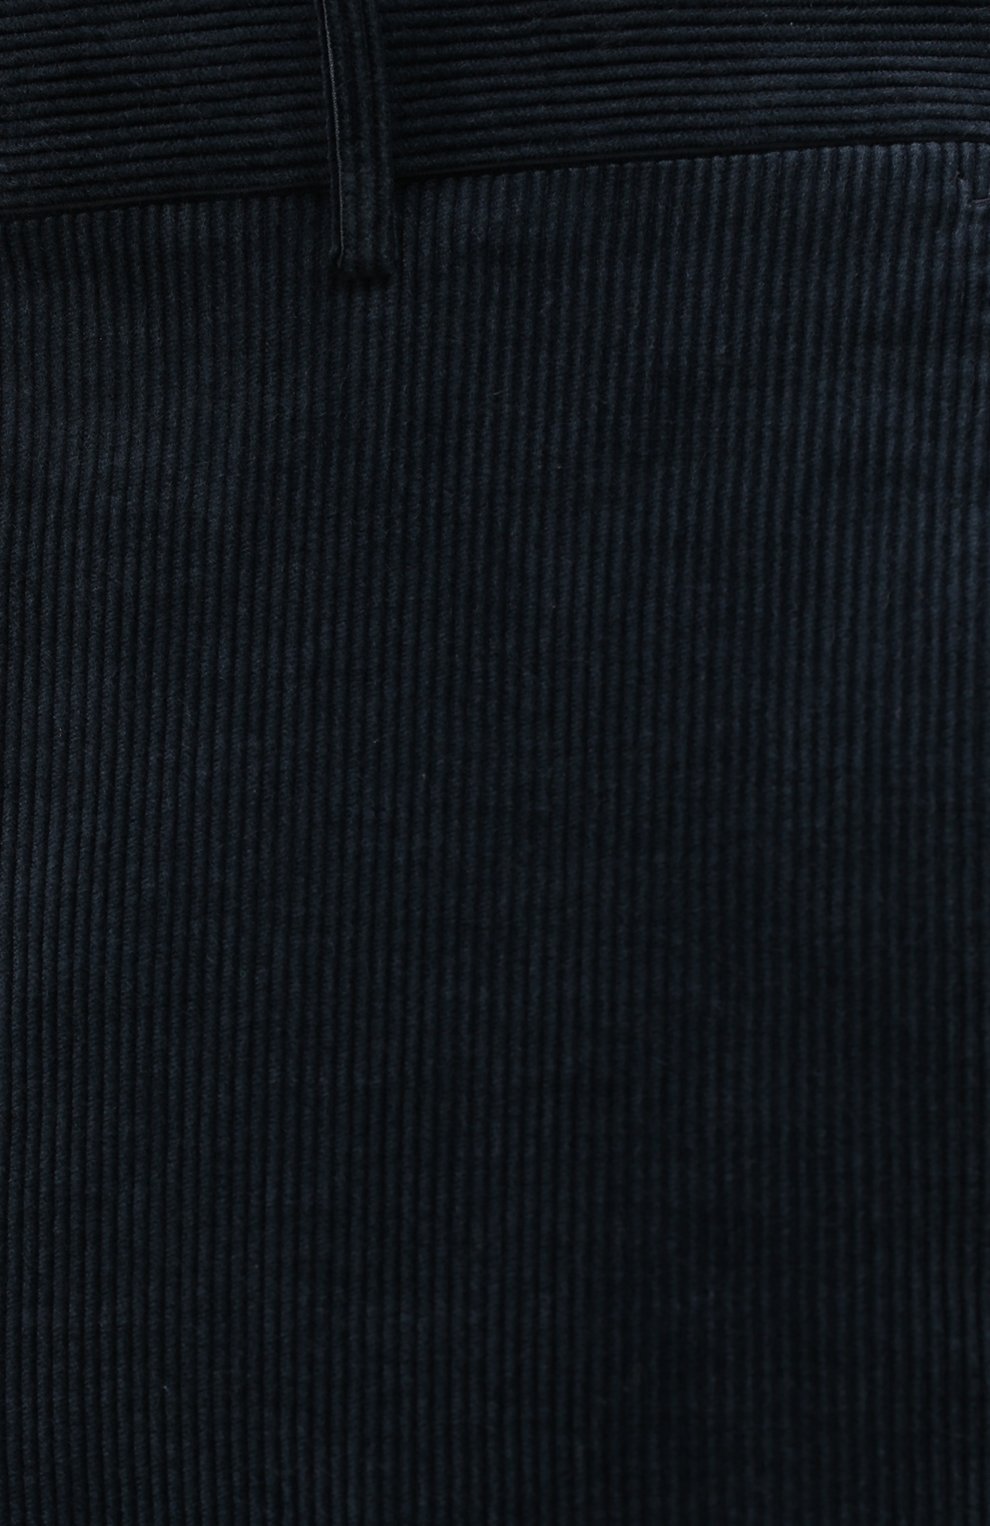 Мужские брюки из хлопка и кашемира ERMENEGILDO ZEGNA темно-синего цвета, арт. 865F14/77TB12 | Фото 5 (Длина (брюки, джинсы): Стандартные; Материал внешний: Хлопок; Стили: Классический; Случай: Формальный)